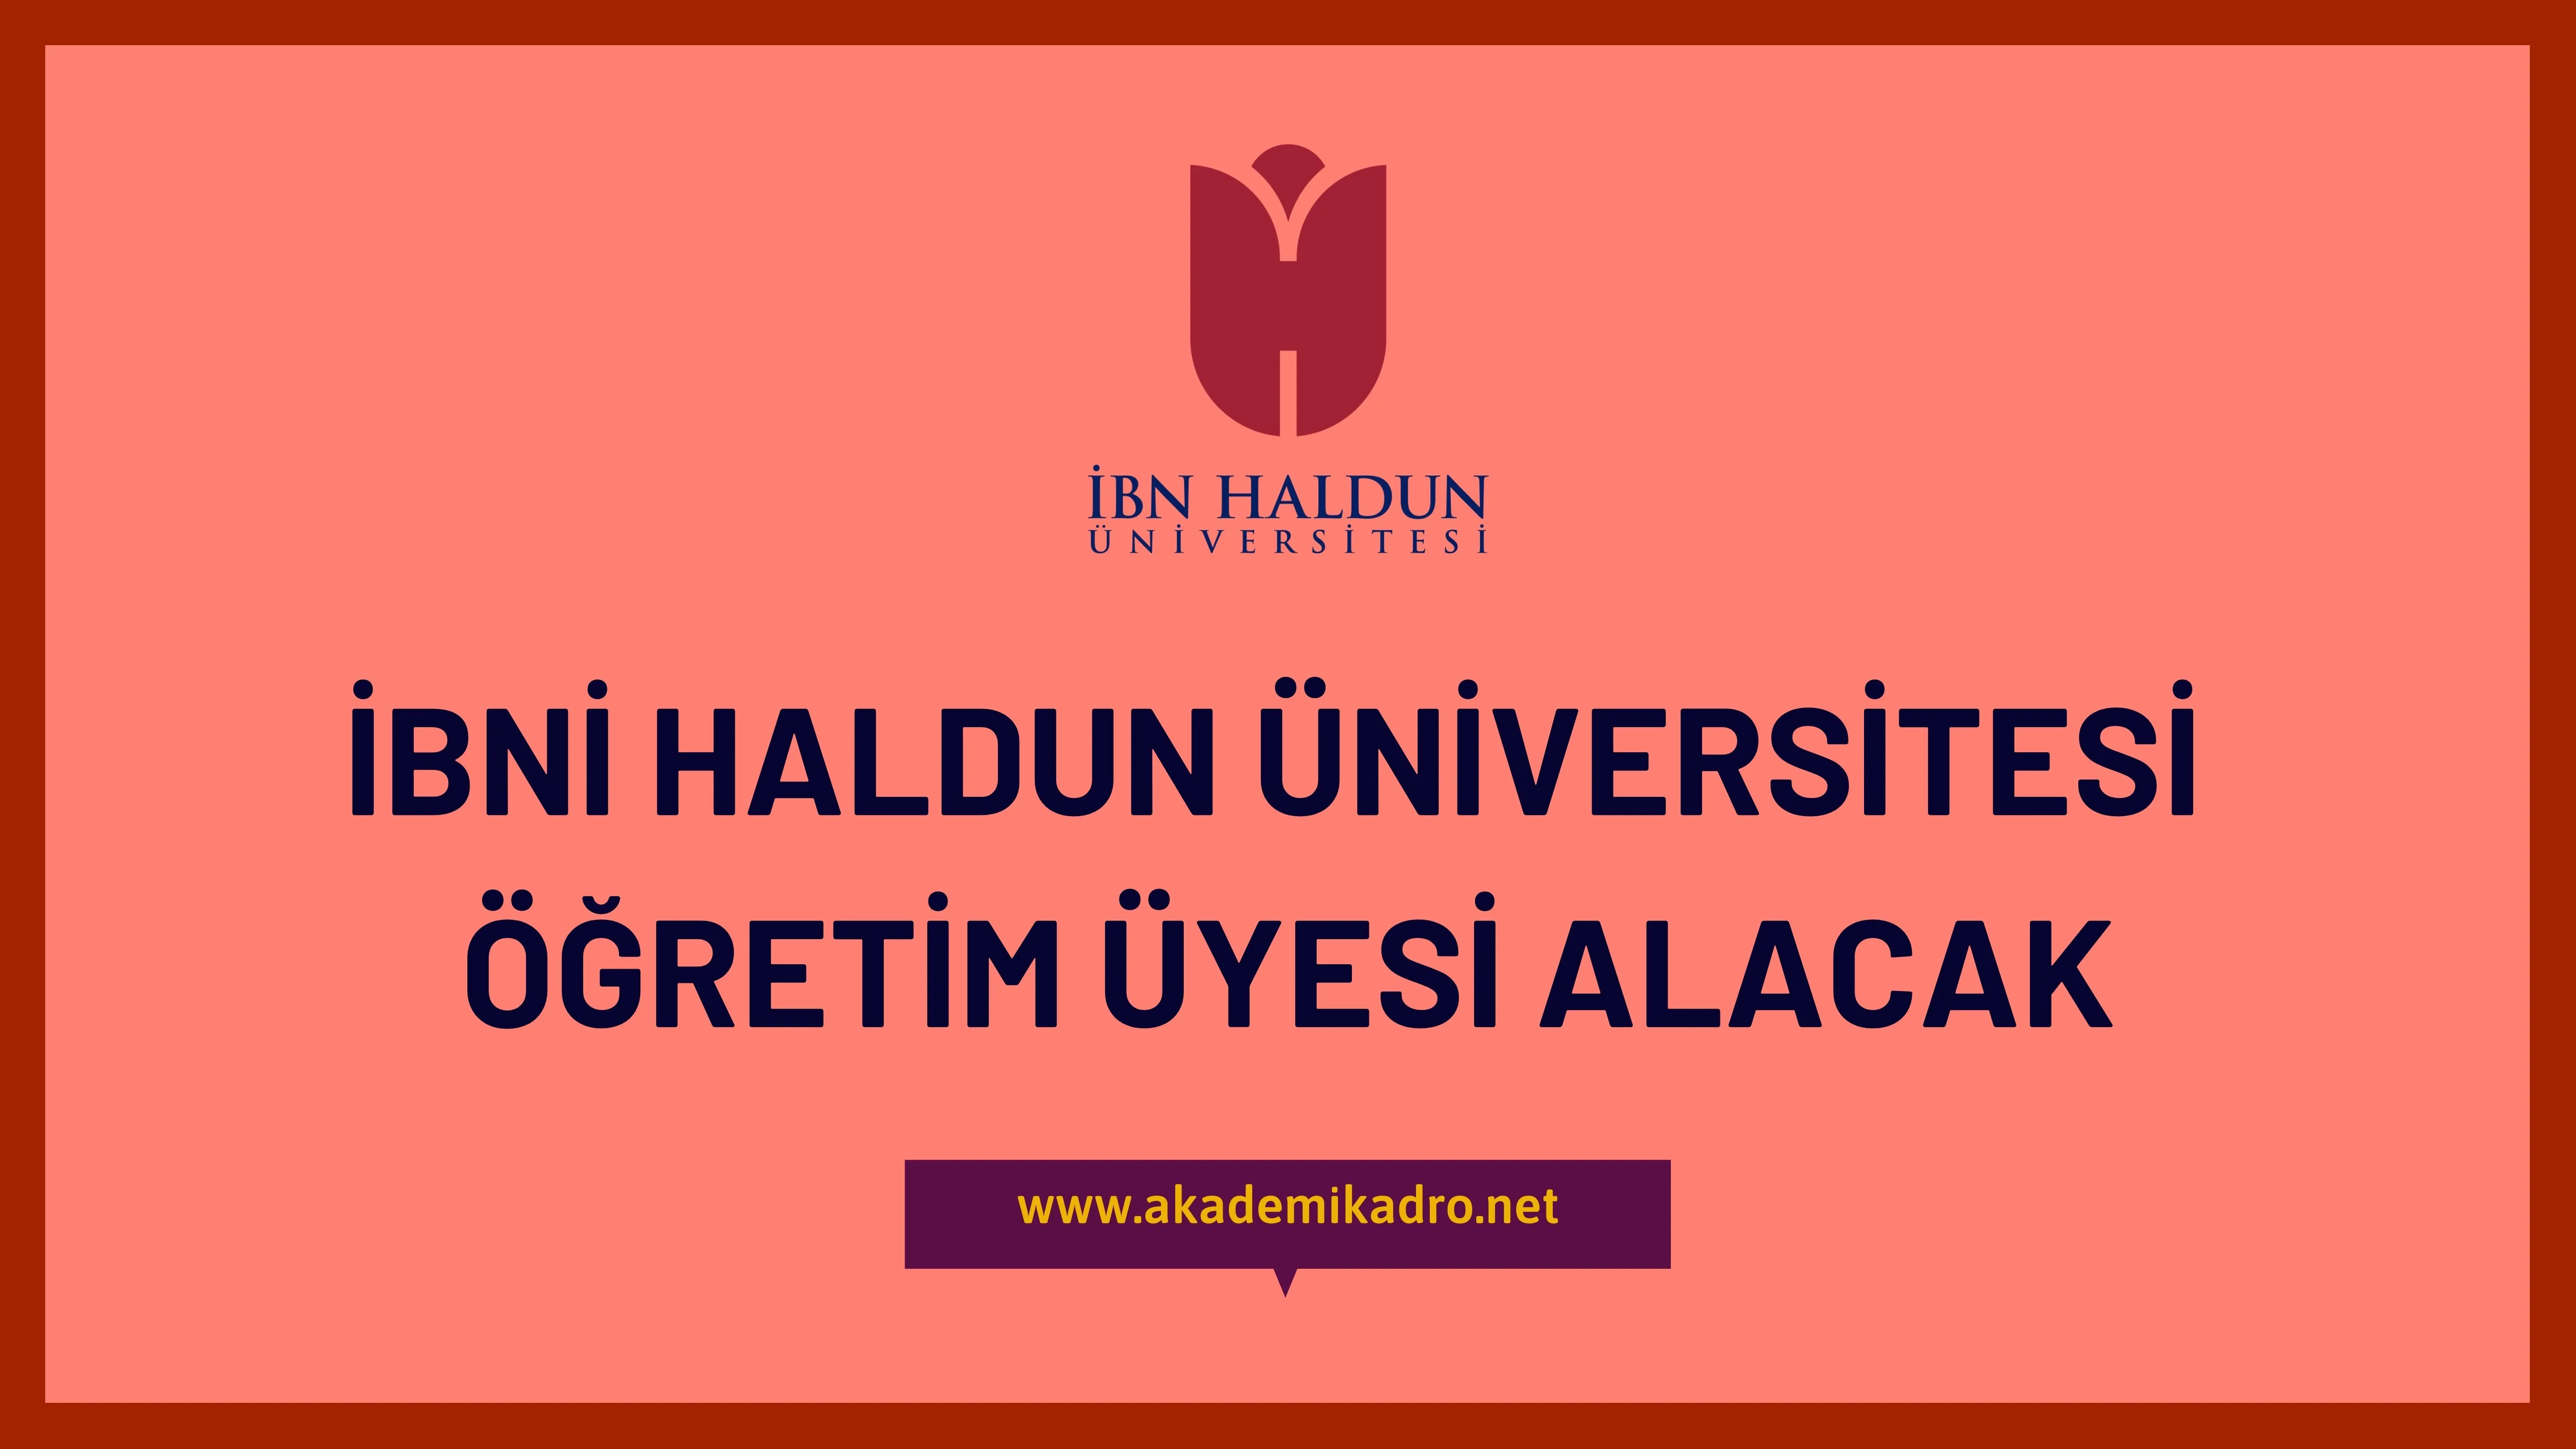 İbn Haldun Üniversitesi öğretim üyesi alacaktır.